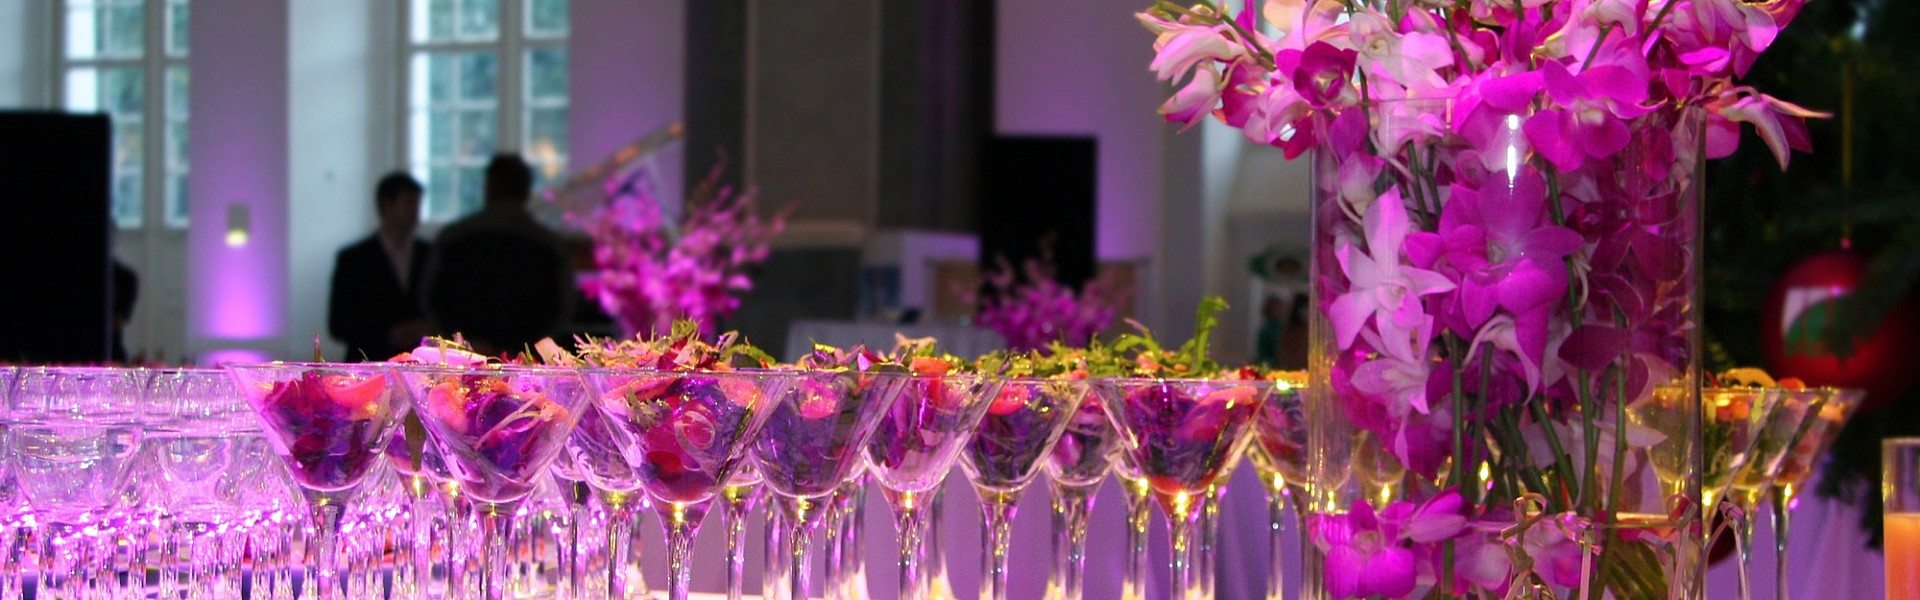 Symbolfoto Blumen Bremkens - Blumendeko für Kommunion - Jubiläum und Events